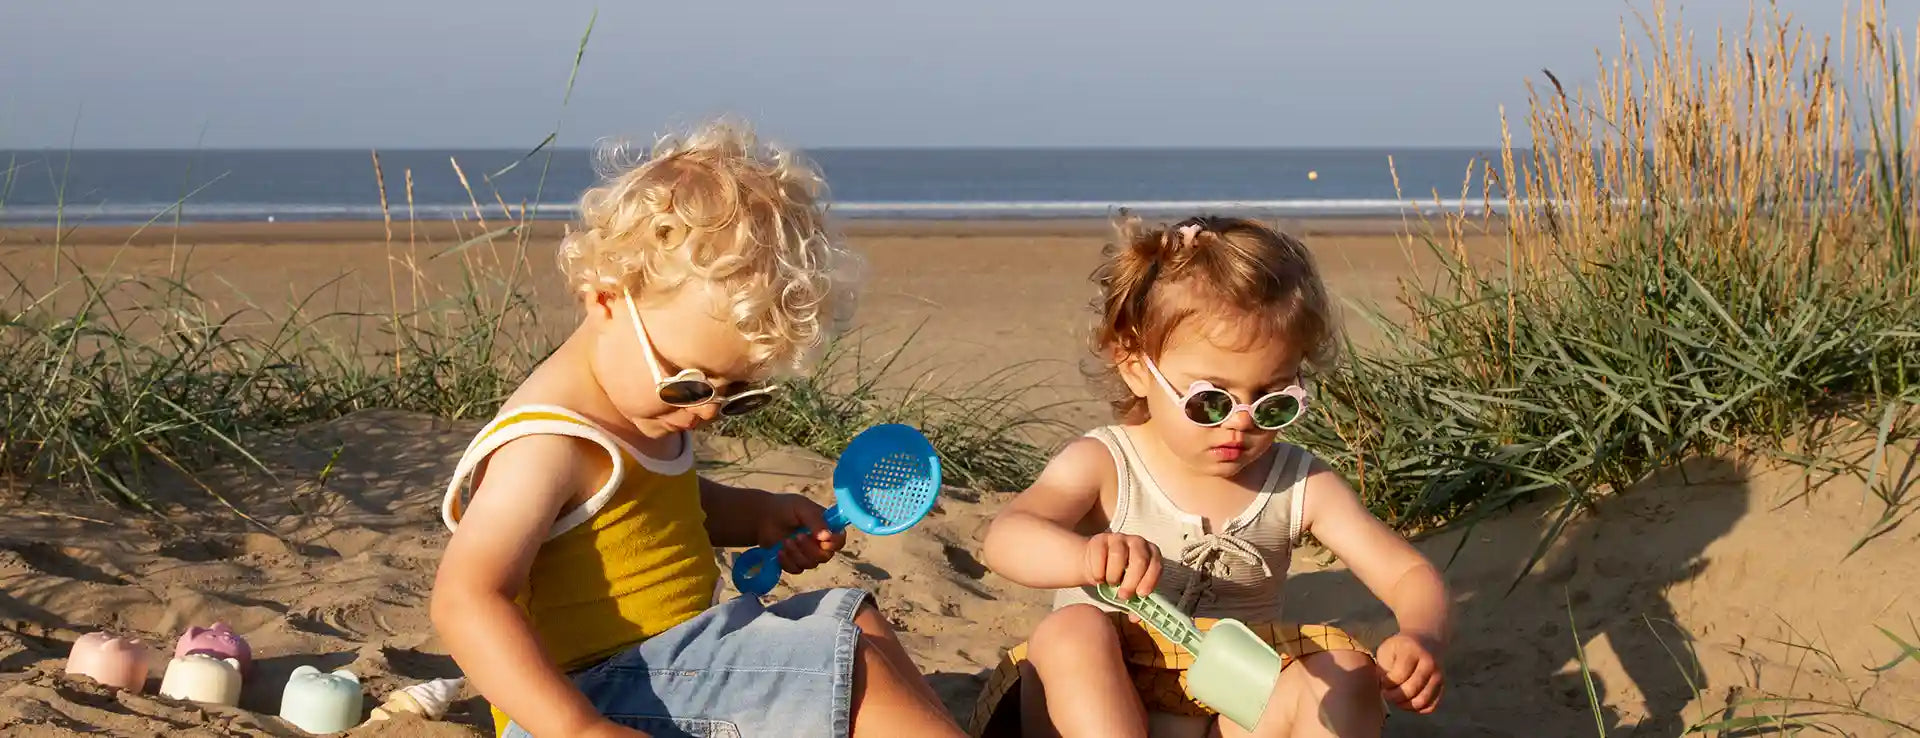  Deux enfants jouant sur la plage avec lunettes soleil